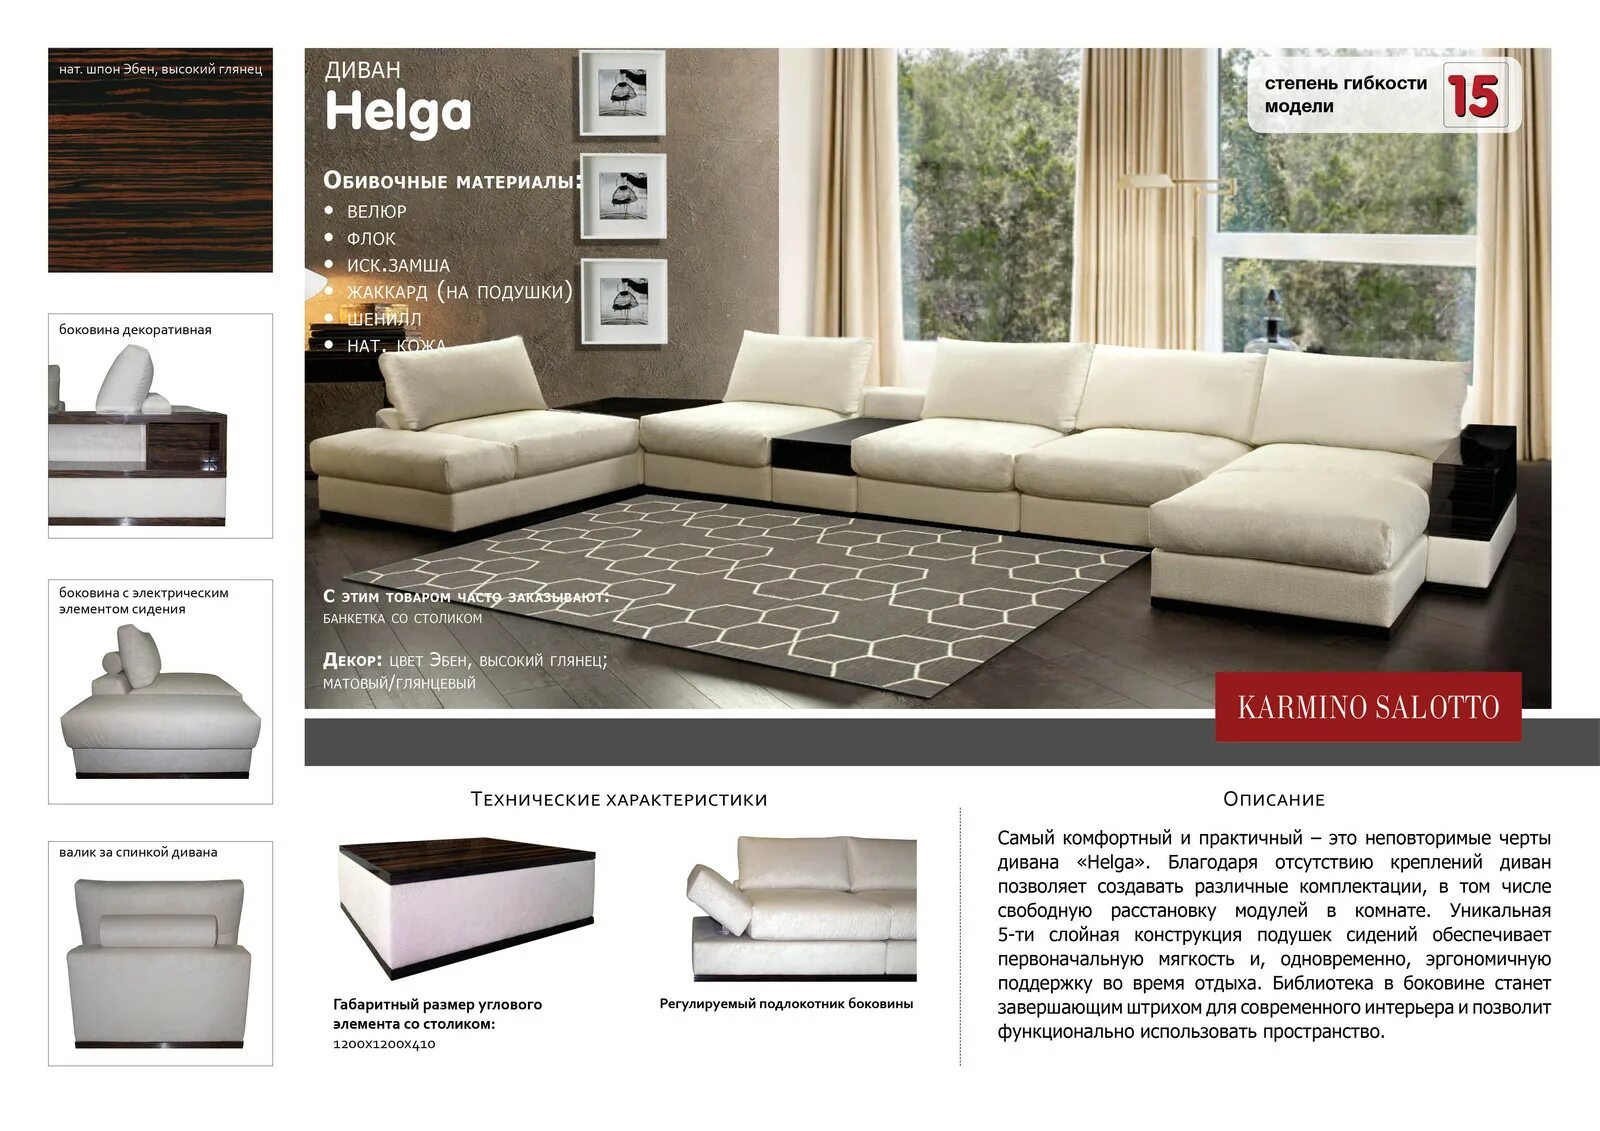 Образцы диванов. Технические характеристики дивана пример. Диван выставочный образец.